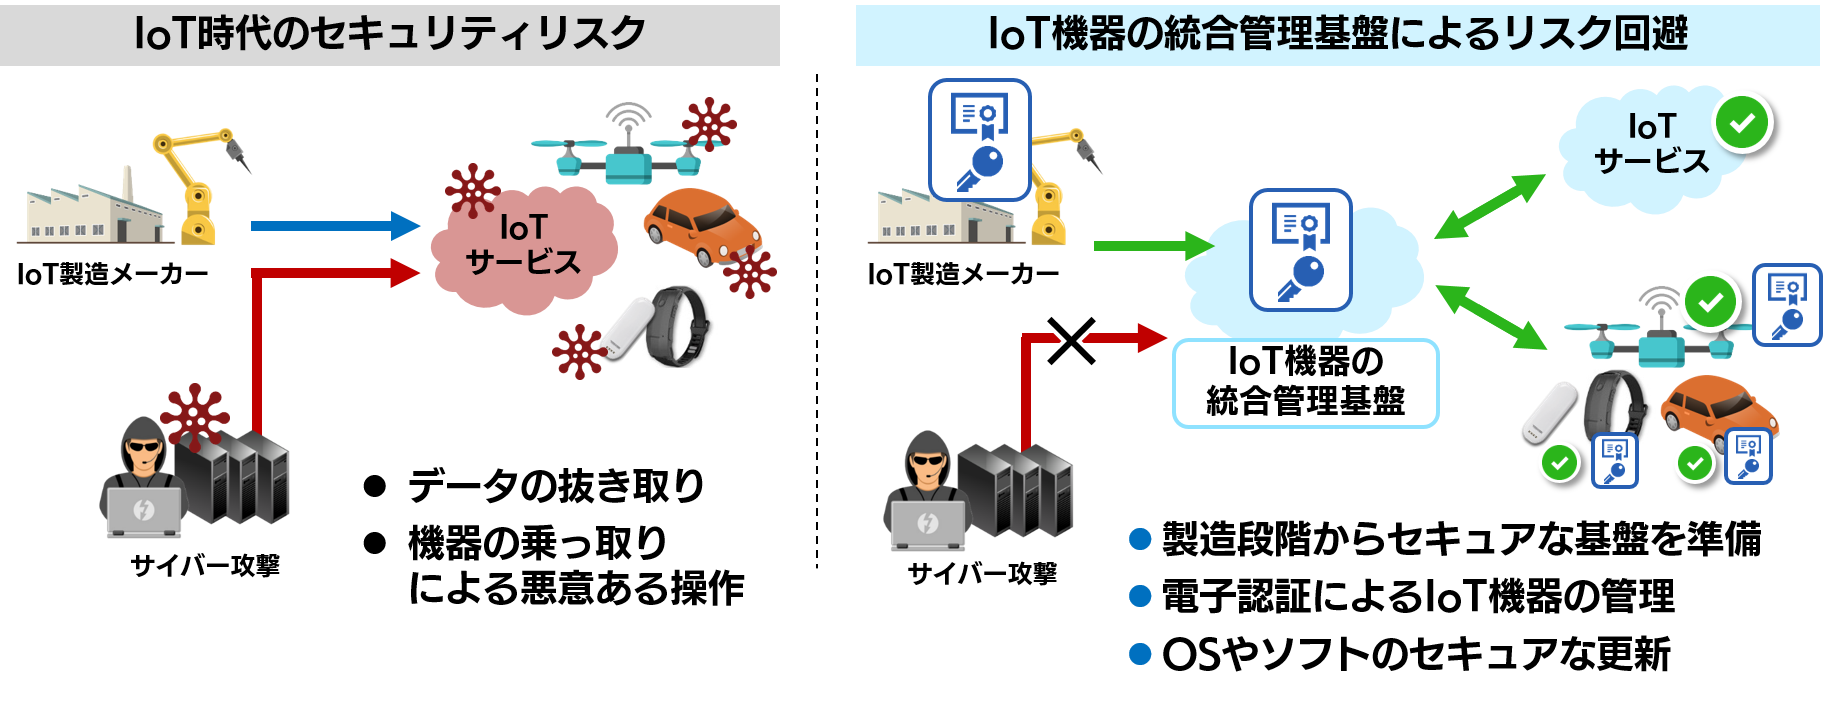 「IoT機器の統合管理基盤」の提供のイメージ図 